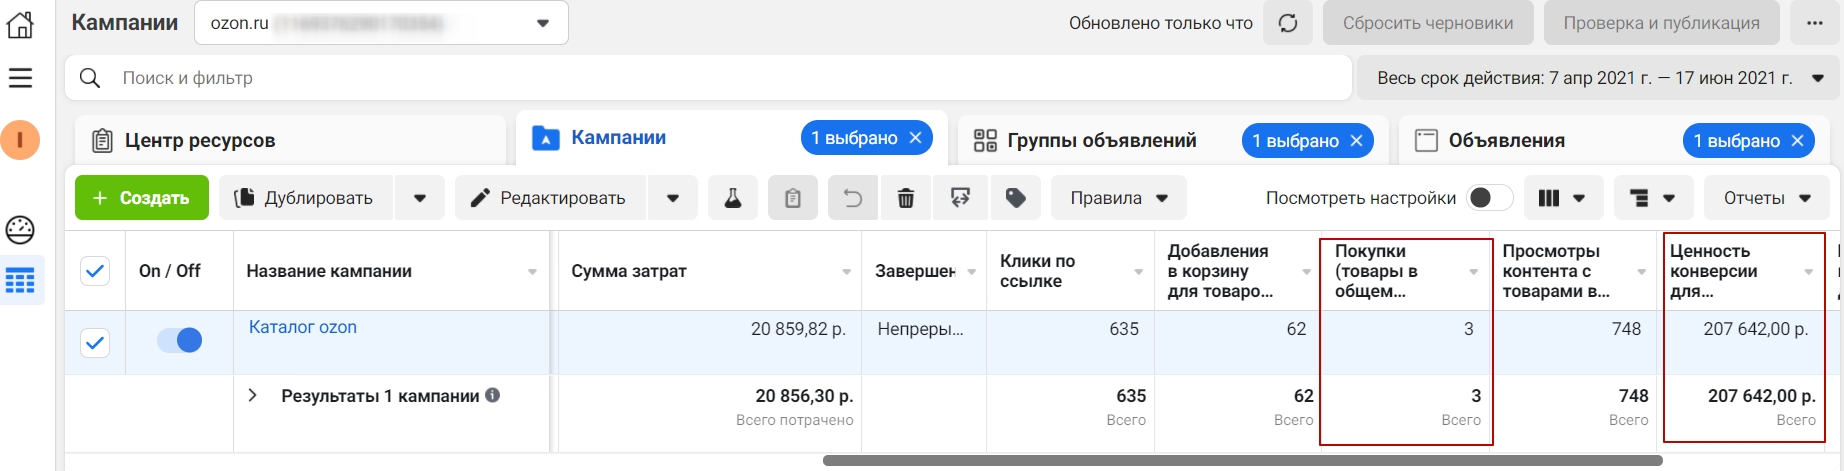 Сочный кейс продвижения магазина bbleo на маркетплейсе ozon.ru с помощью таргетированной рекламы instagram